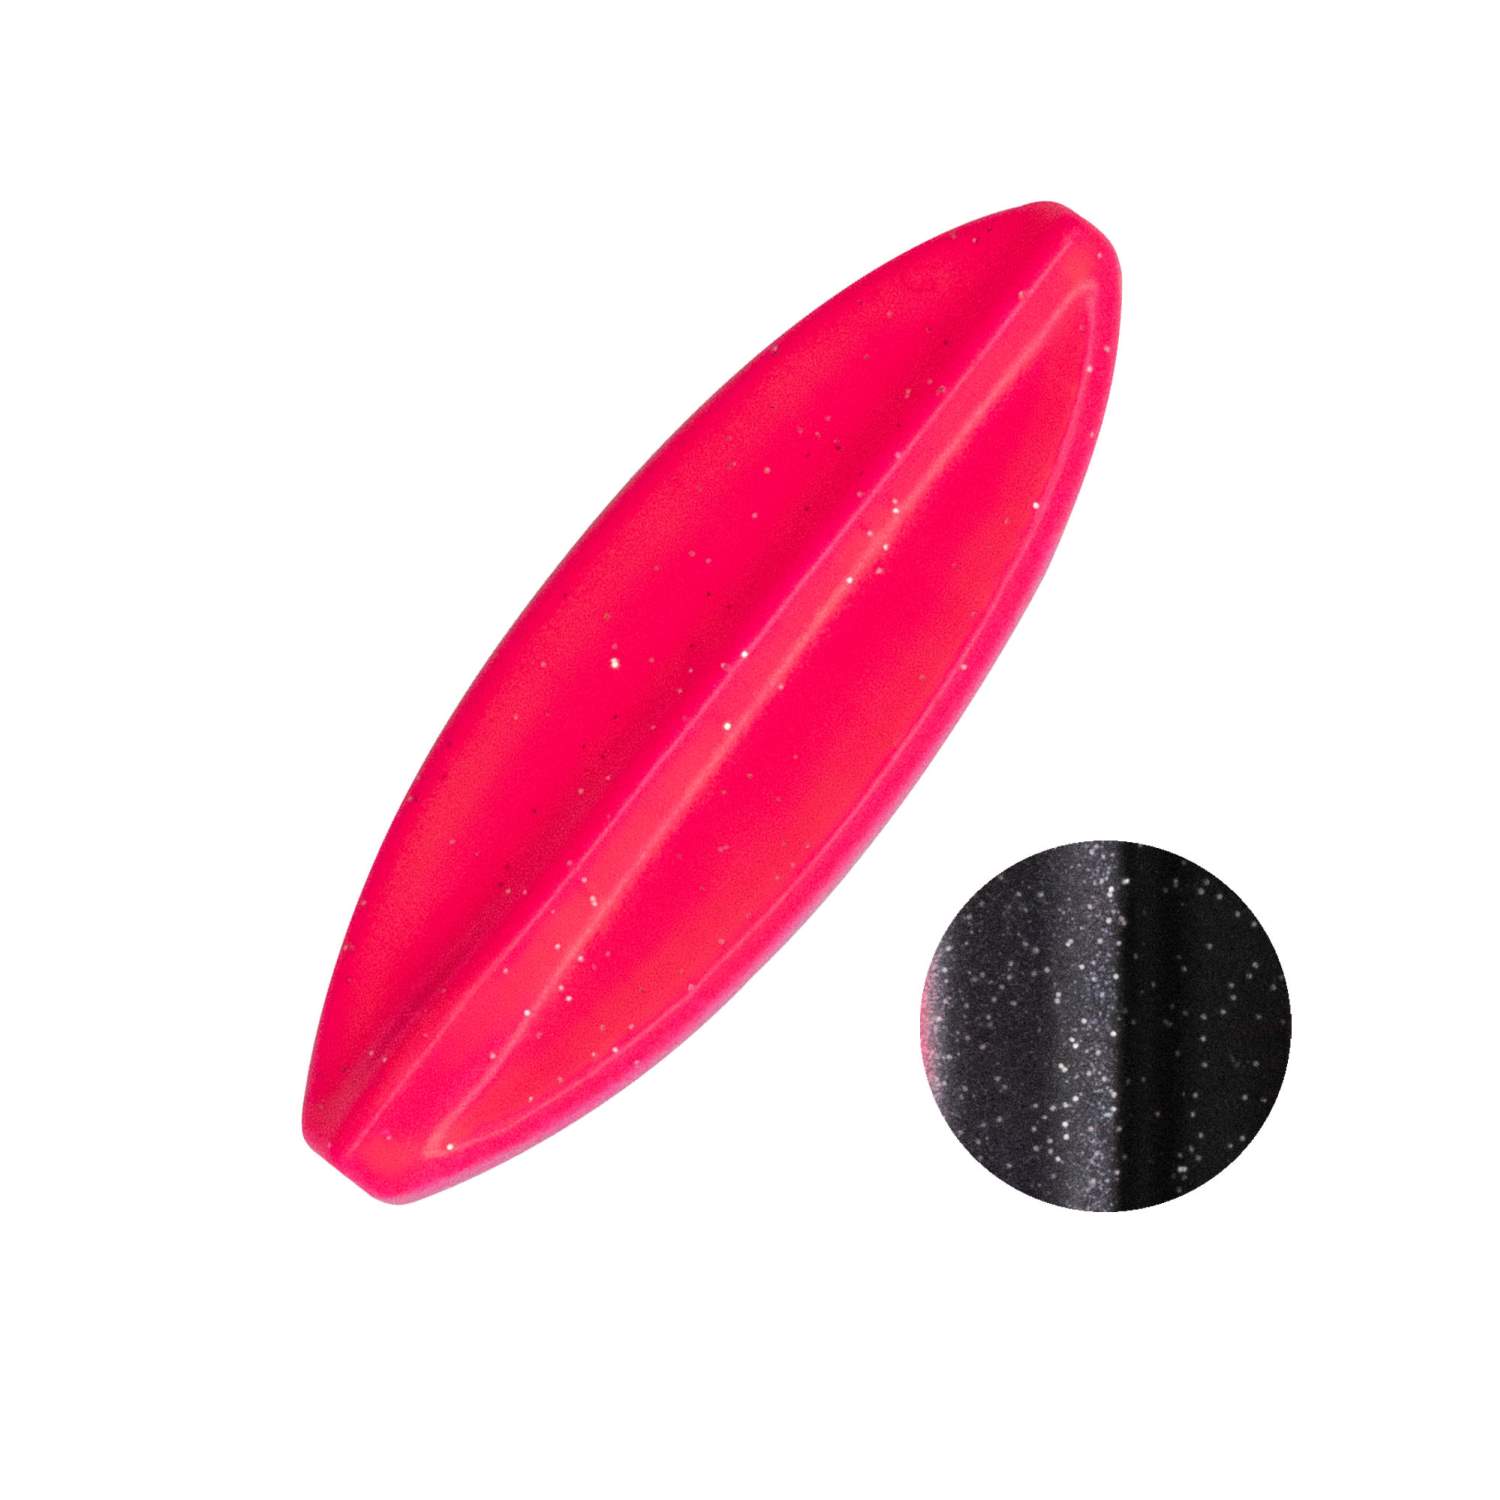 Troutlook - Hurricane - Inline Spoon - 5cm - 5gr - Black/Pink UV